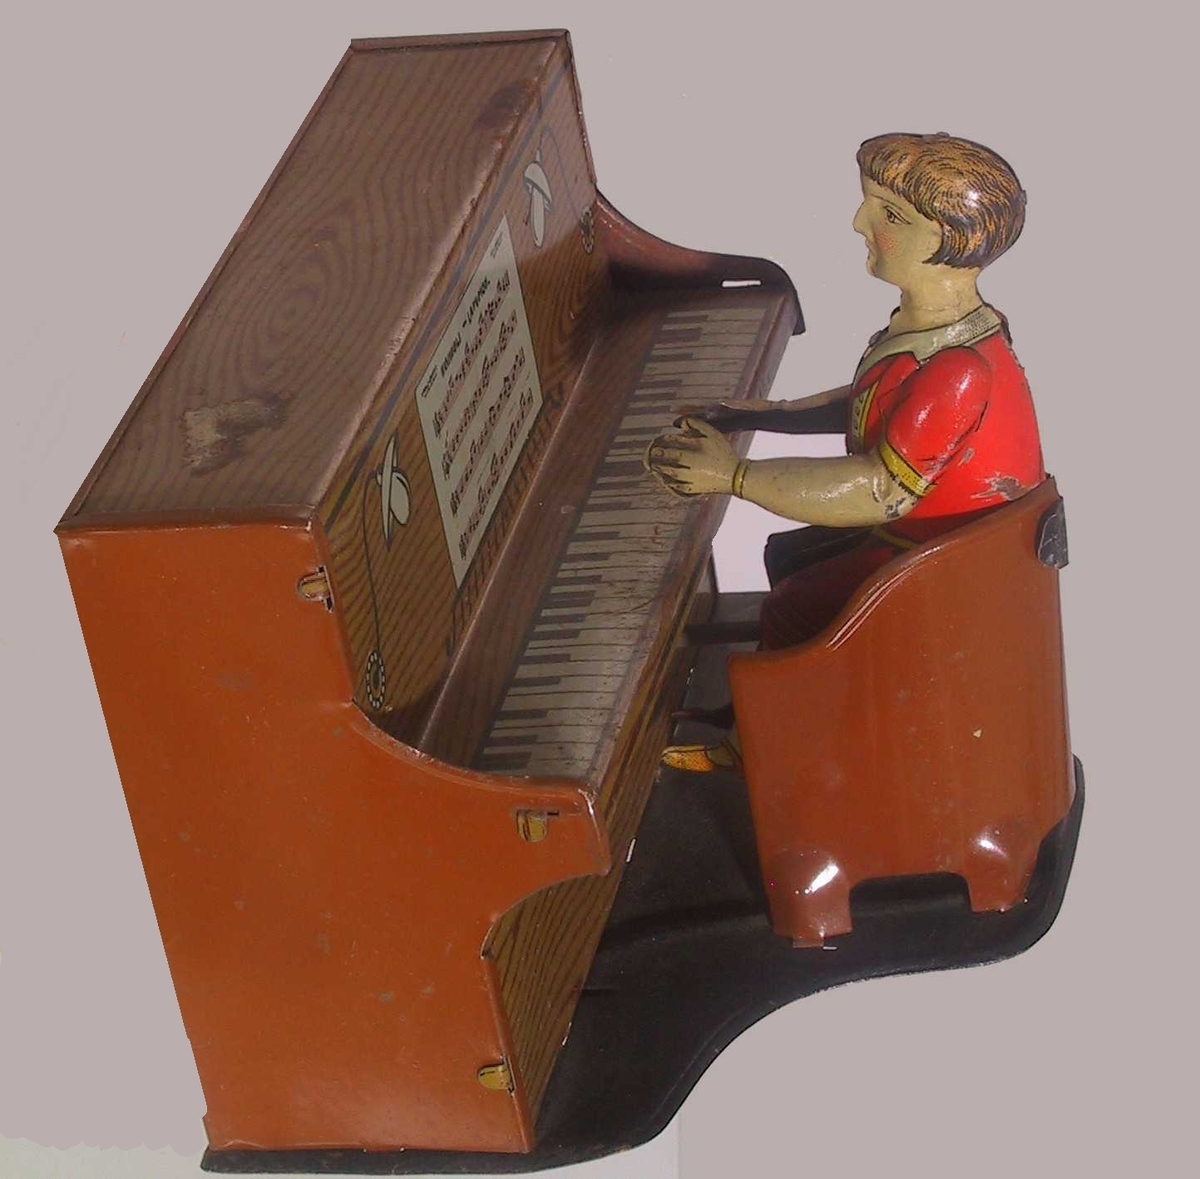 Piano med stol foran, i denne sitter en pianist. På baksiden av pianoet en sveiv som lager lyd og beveger pianisten.